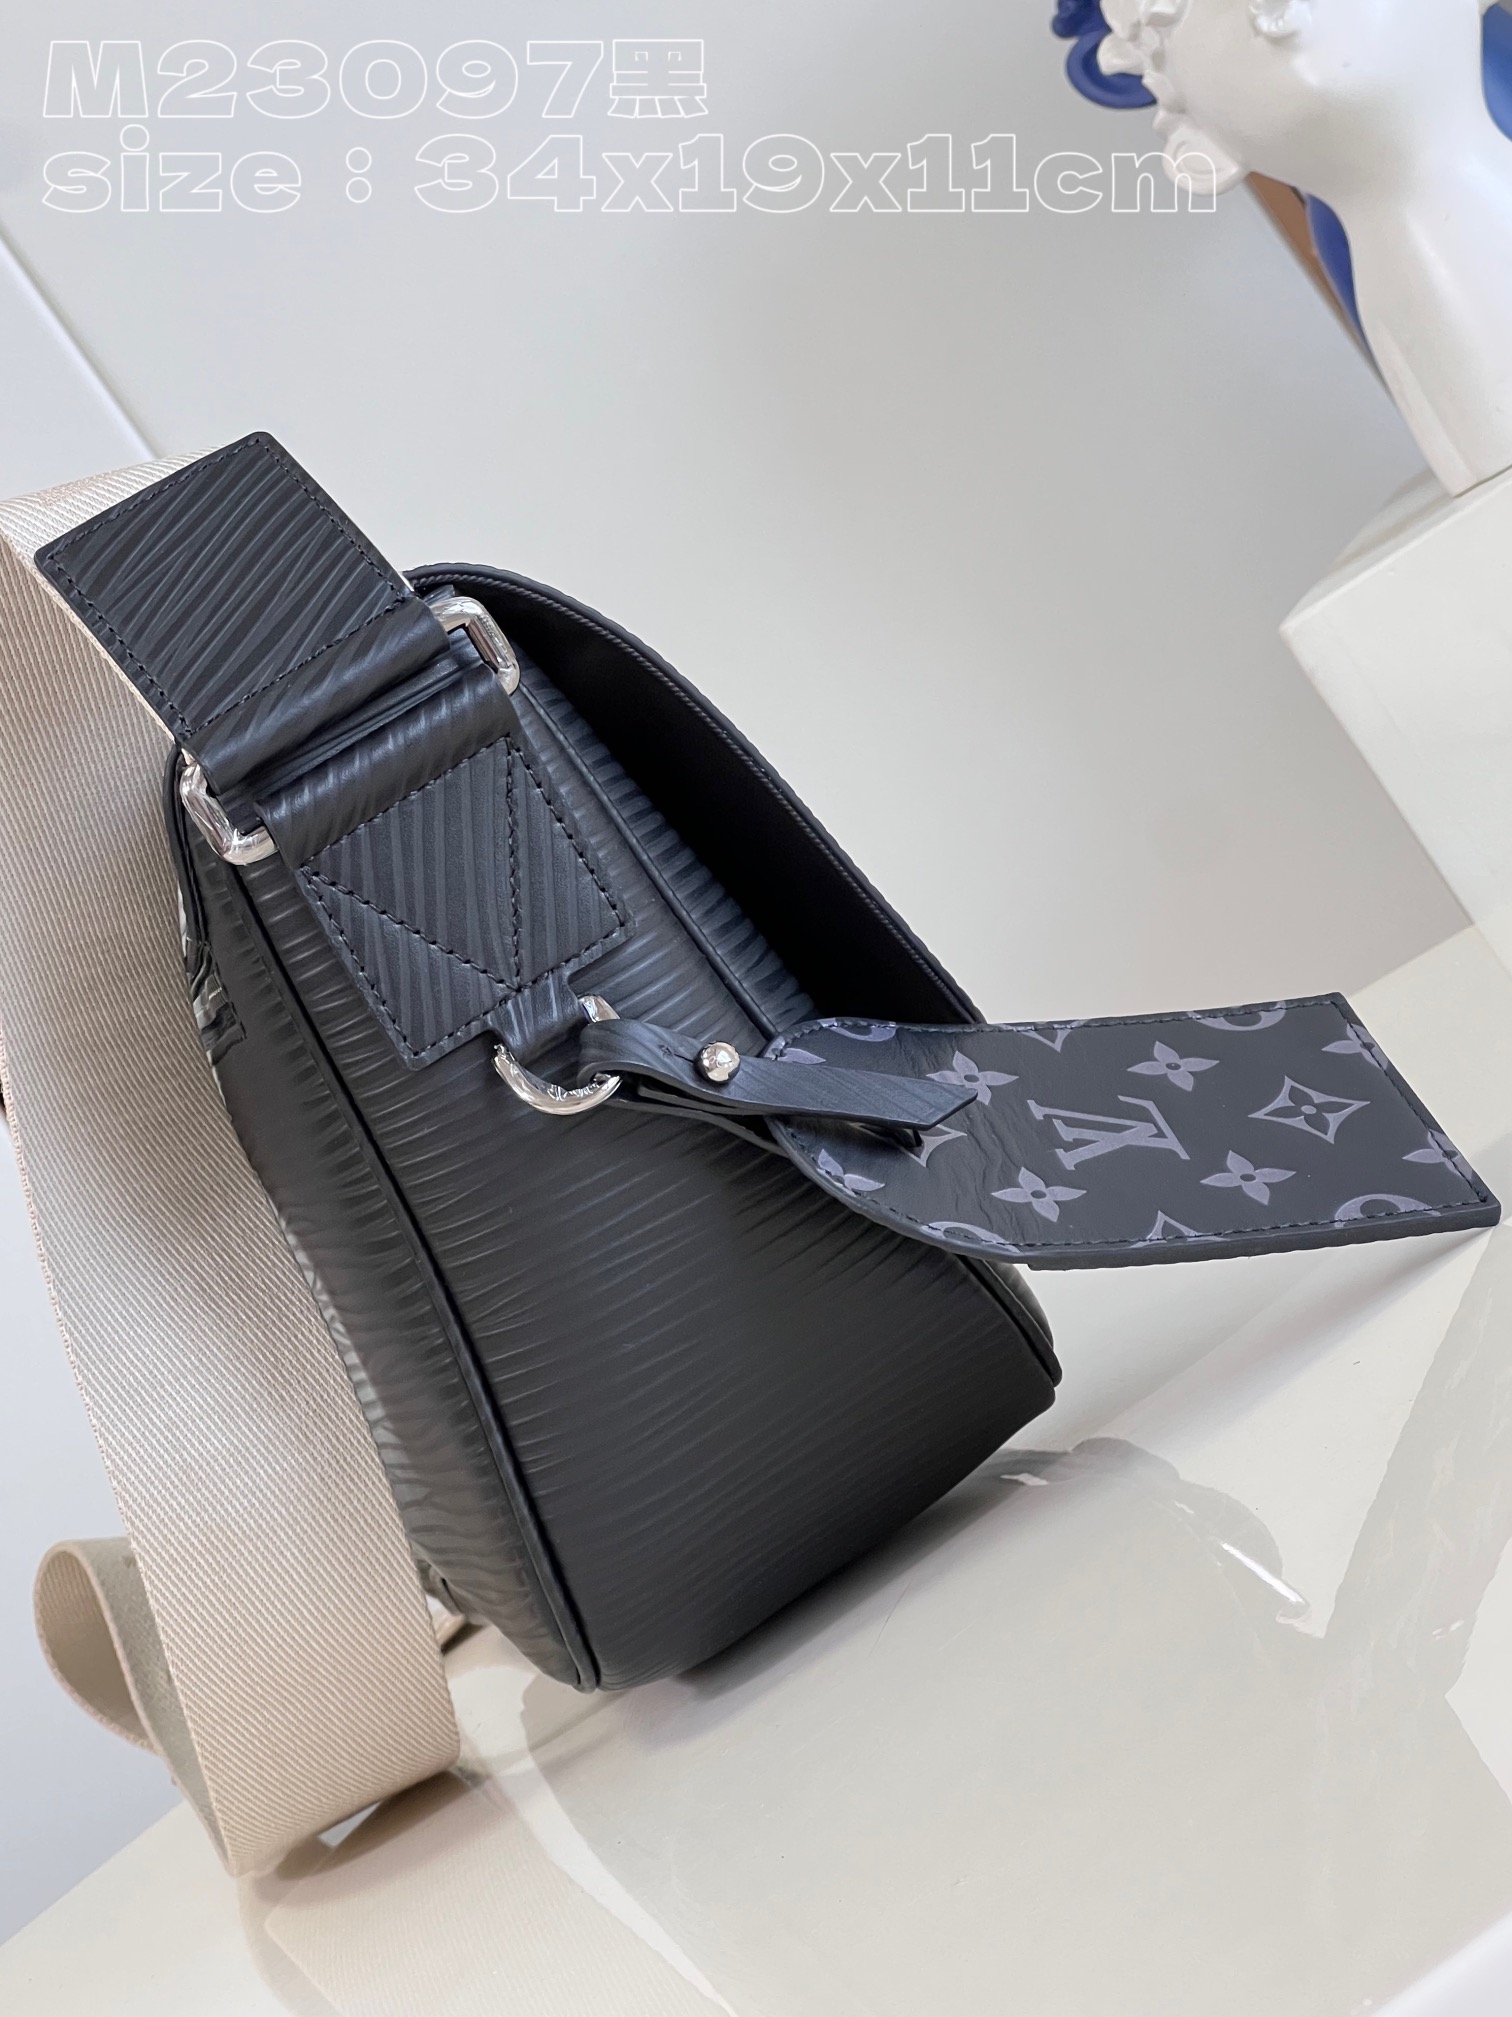 顶级原单M23097黑Montsouris邮差包为柔软牛皮革压印Epi图案以摩登构型囊括充裕空间口袋和隔